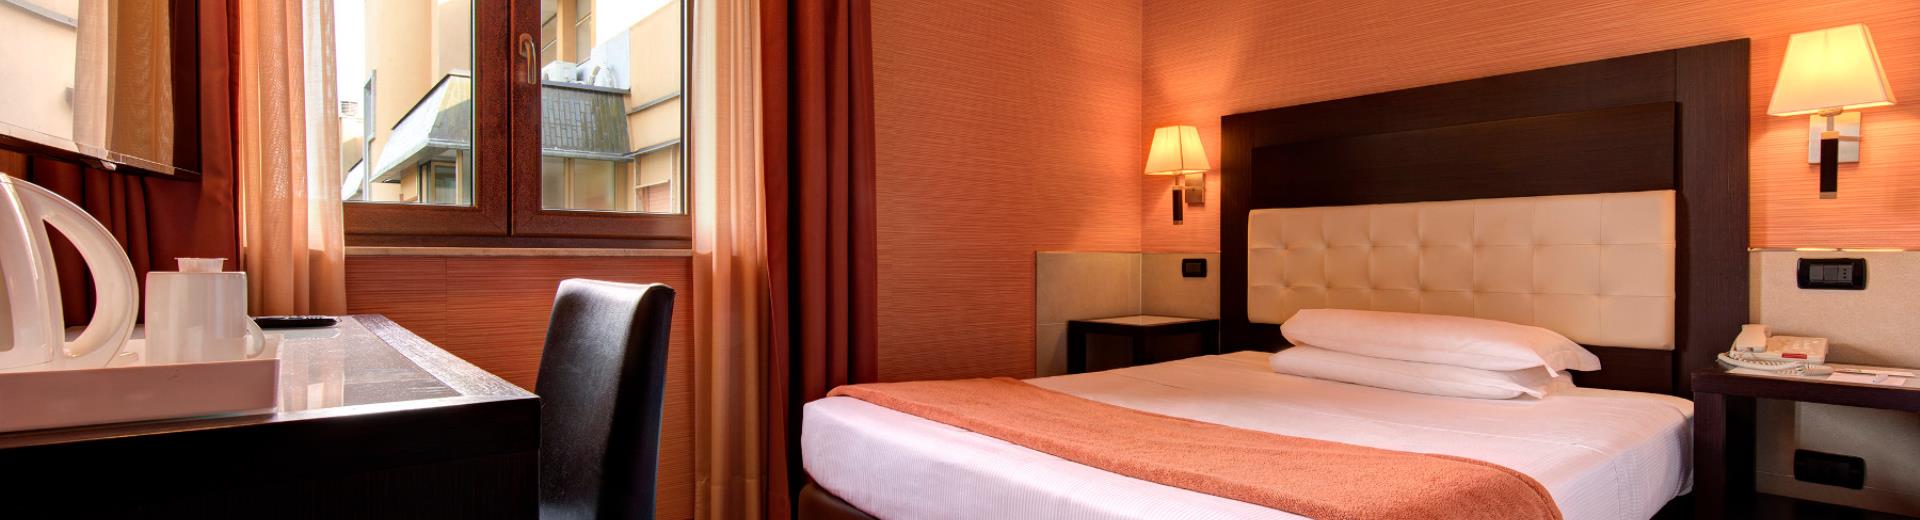 Economy Room - Best Western Gorizia Palace Hotel